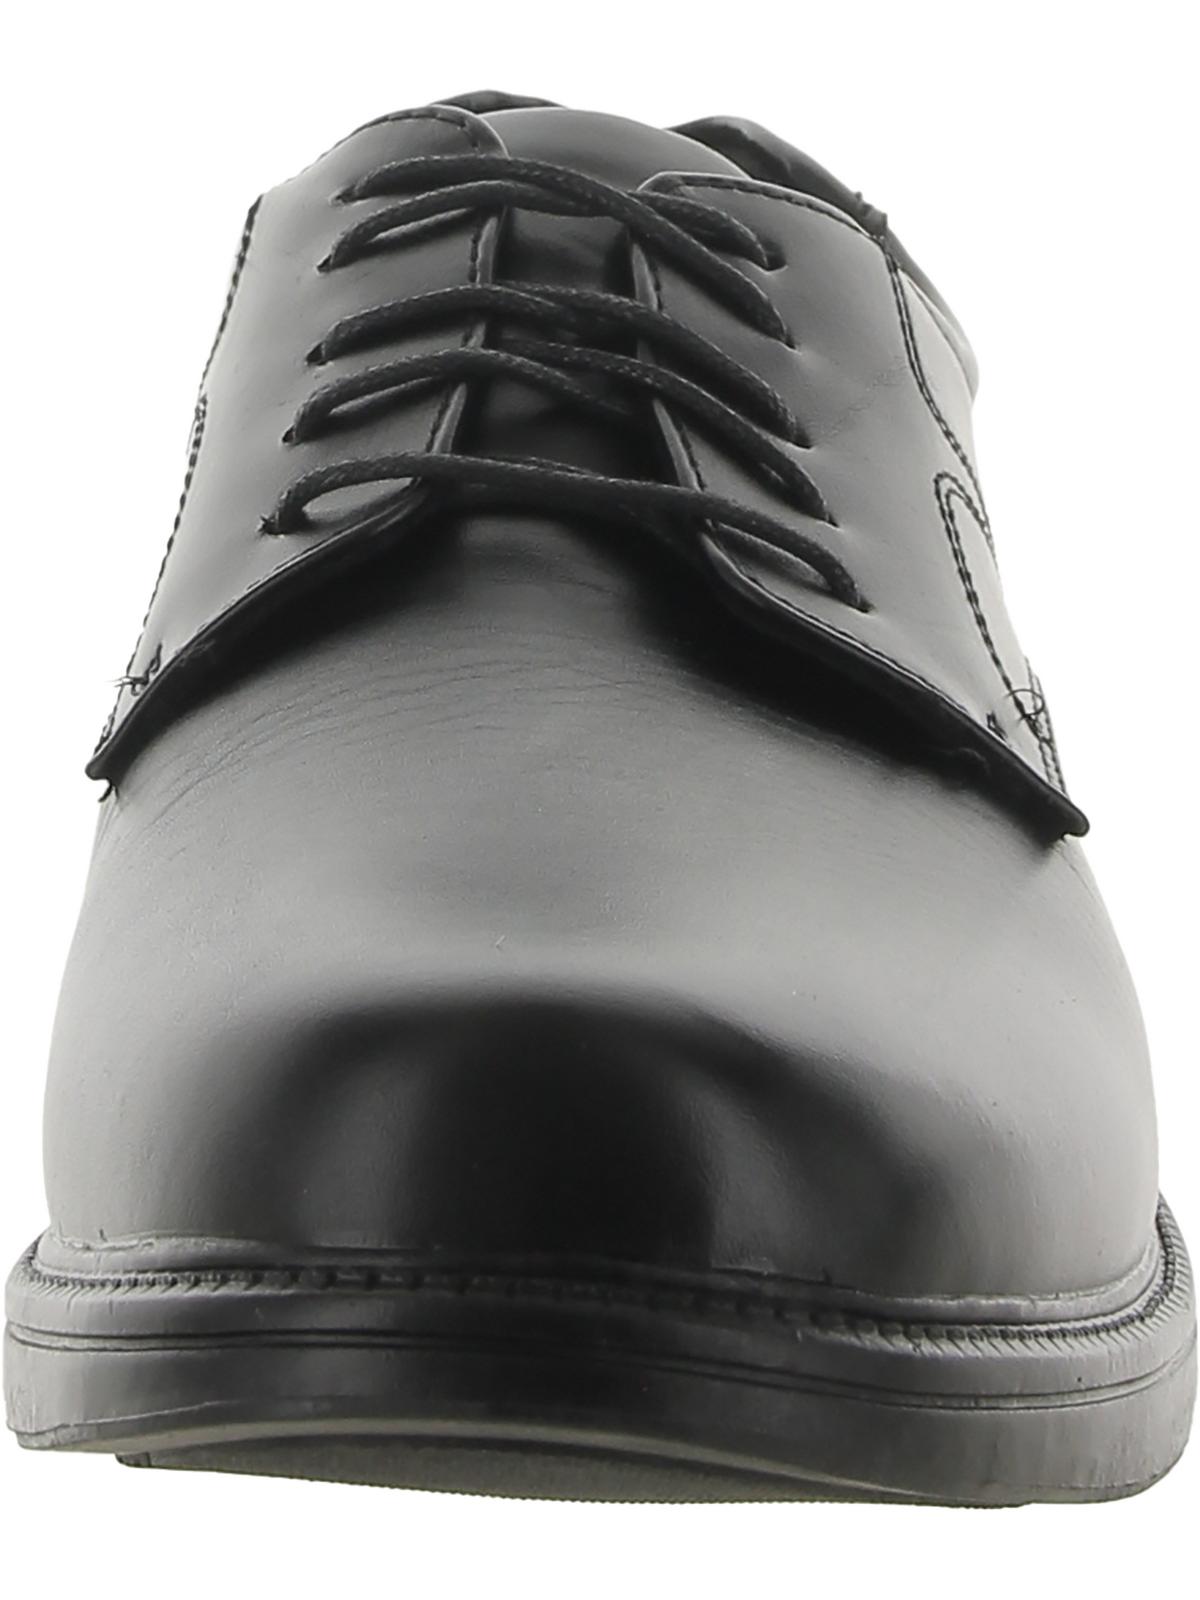 Deer Stags Men's Nu Times Waterproof Slip-Resistant Leather Oxford - Black - 13 Medium - image 3 of 3